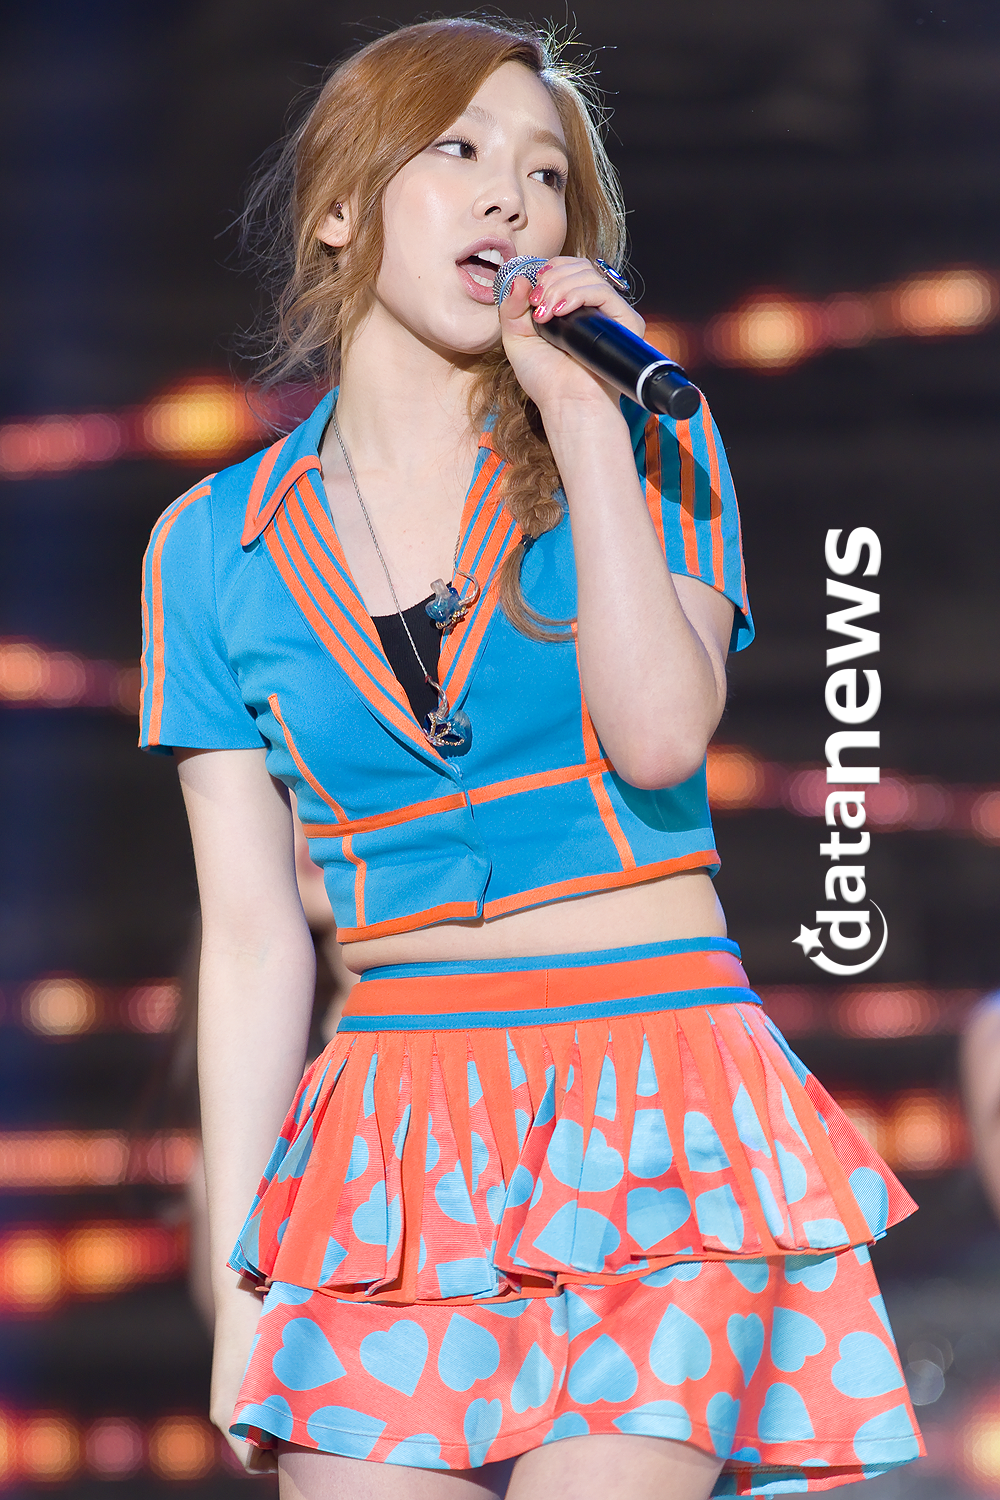 [PIC][30-05-2013]TaeTiSeo biểu diễn tại "PyeongTaek Concert" vào tối nay - Page 5 2120013D51AC248724E3CA